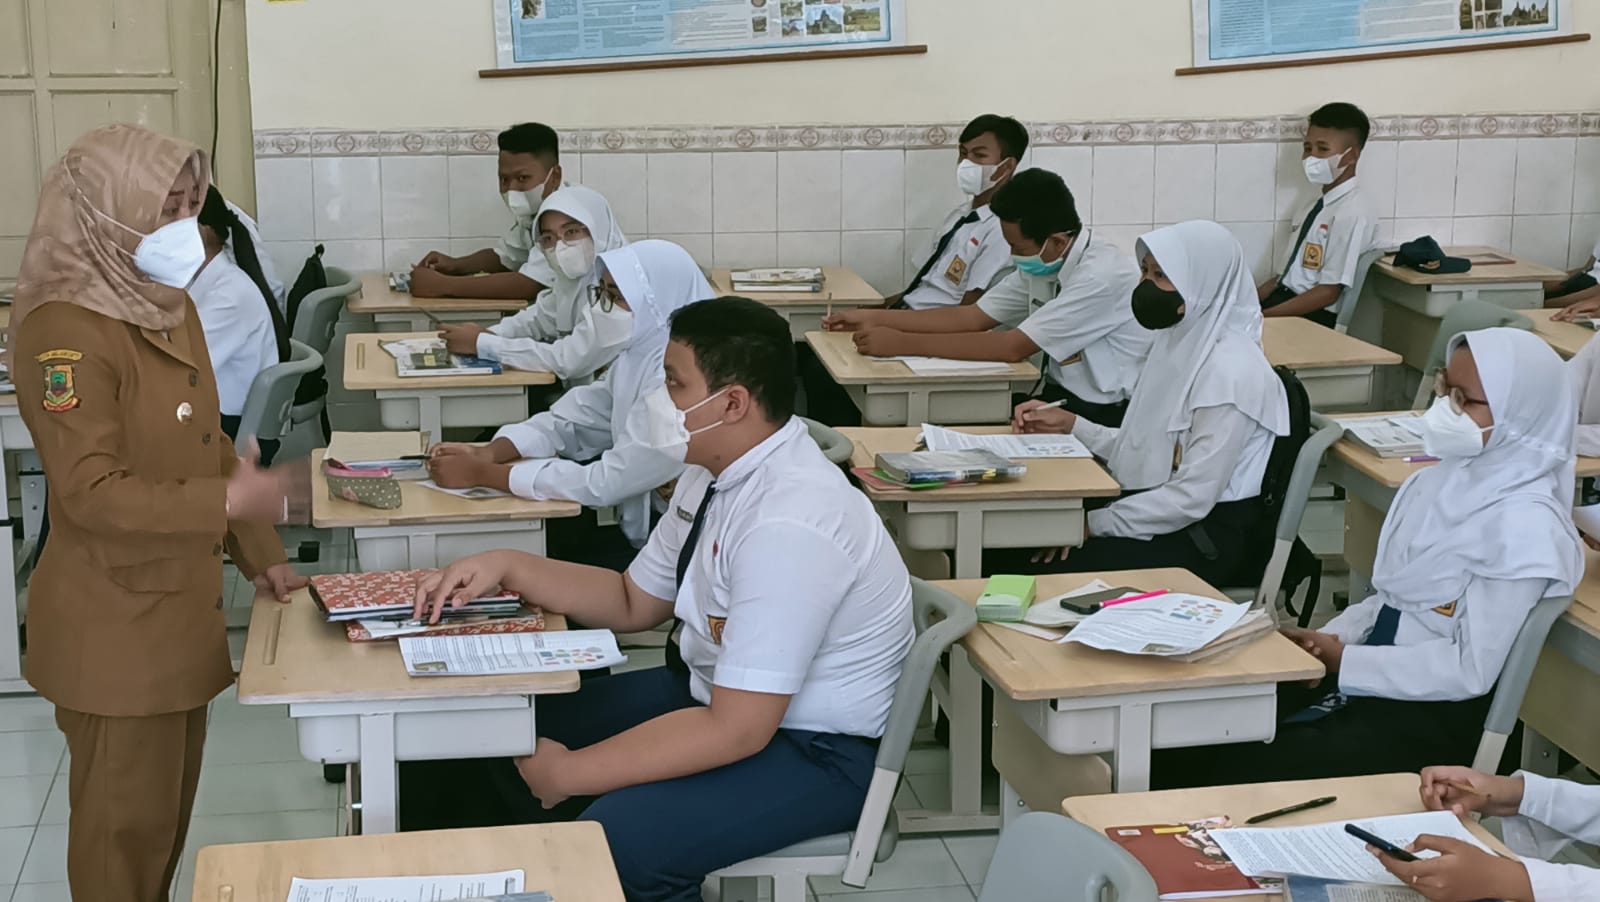 Wali Kota Mojokerto, Ika Puspitasari melakukan inspeksi mendadak Pembelajaran Tatap Muka (PTM) di sejumlah sekolah, Senin (3/1/2021). / Foto: Susan